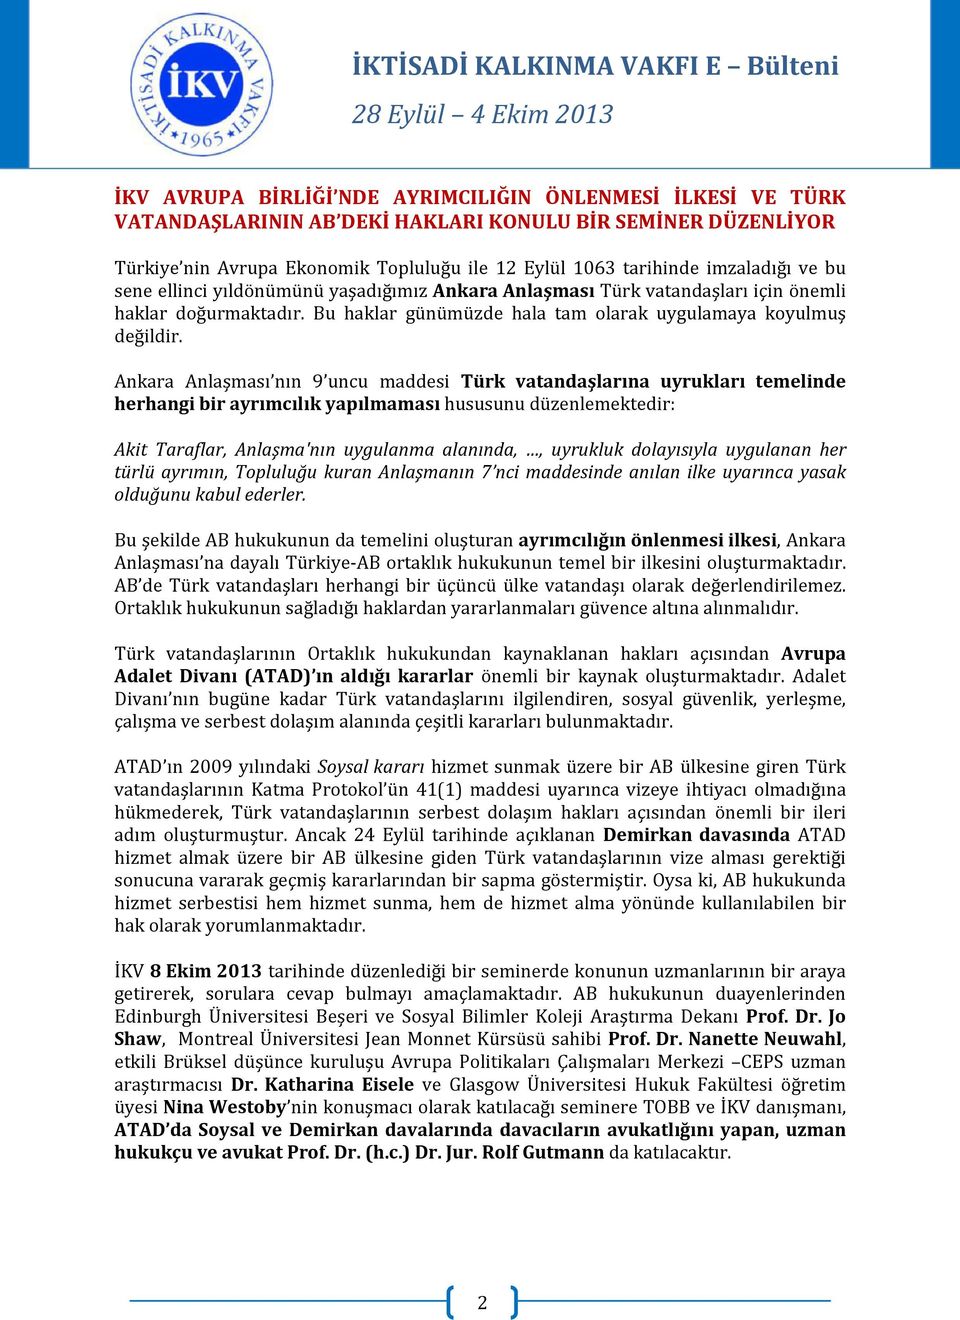 Ankara Anlaşması nın 9 uncu maddesi Türk vatandaşlarına uyrukları temelinde herhangi bir ayrımcılık yapılmaması hususunu düzenlemektedir: Akit Taraflar, Anlaşma'nın uygulanma alanında,, uyrukluk